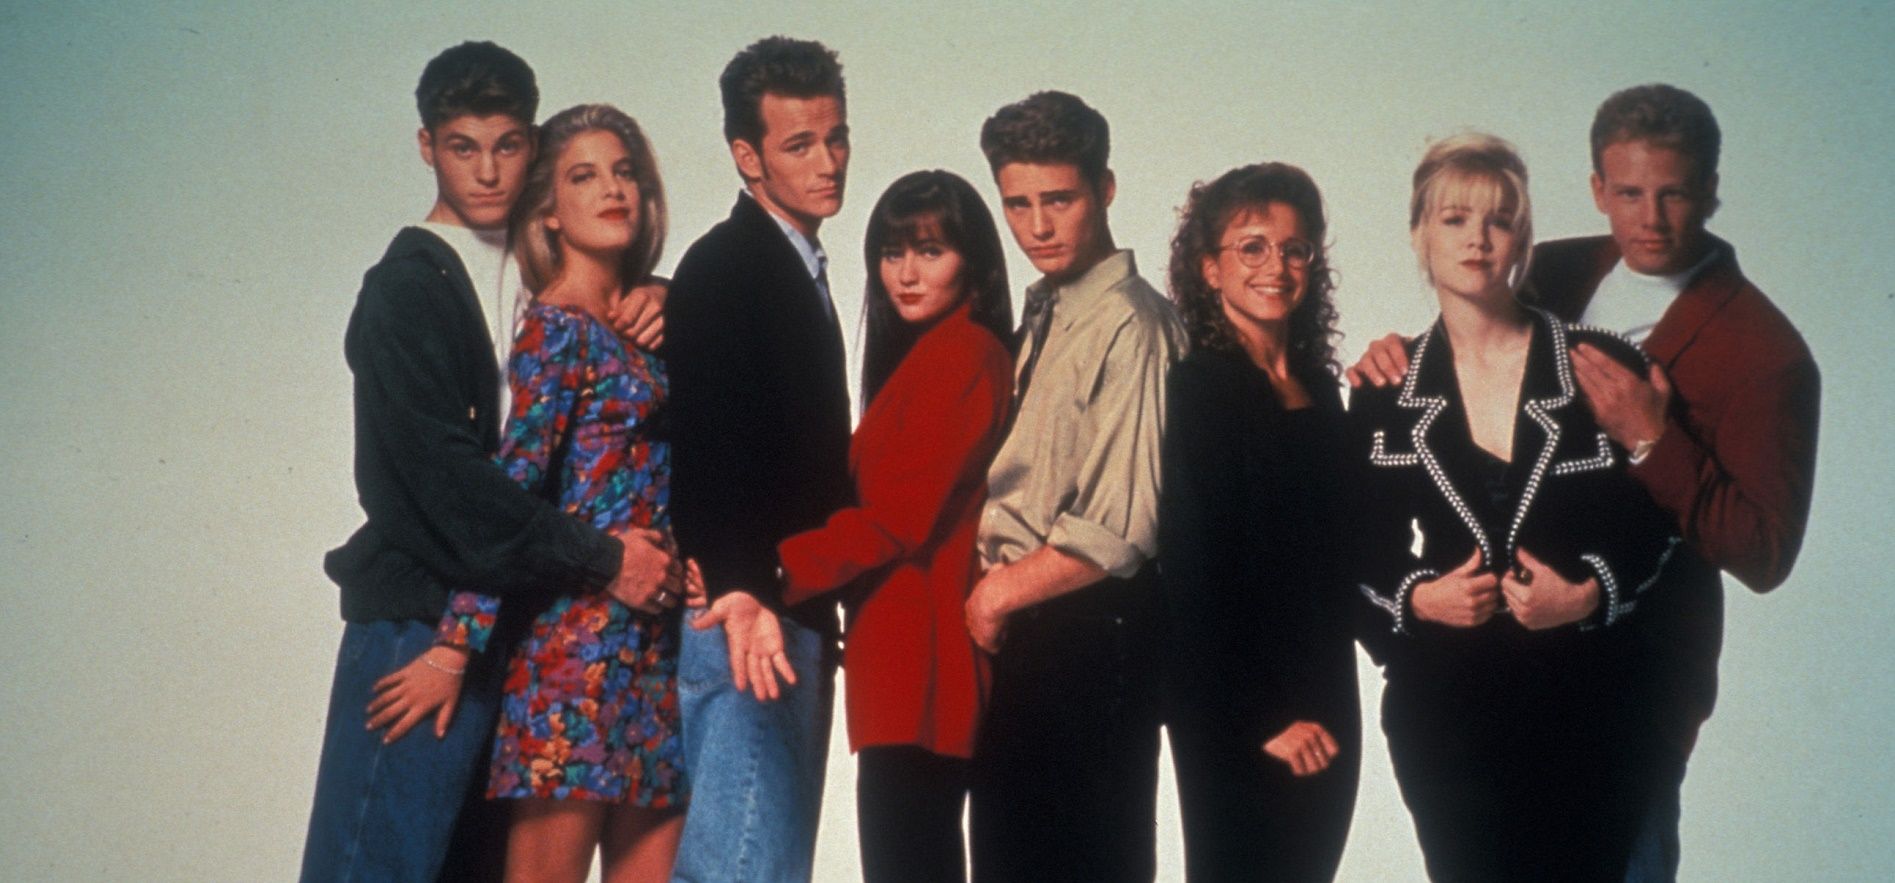 Il cast di Beverly Hills 90210 insieme per sostenere Shannen Doherty